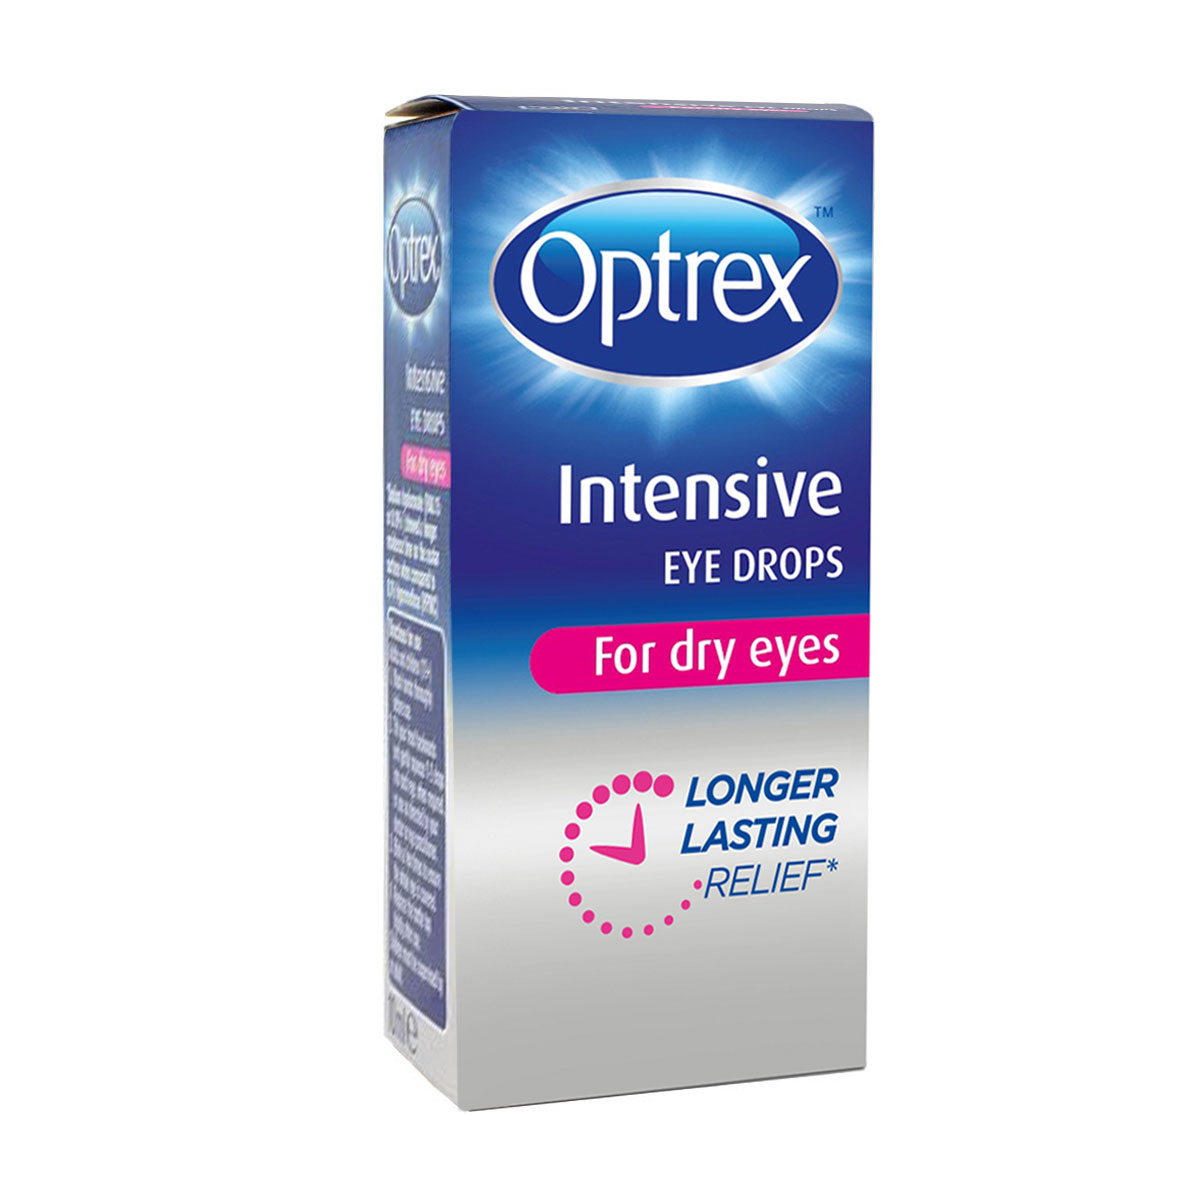 Optrex Intensive Eye Drops (10ml) Review